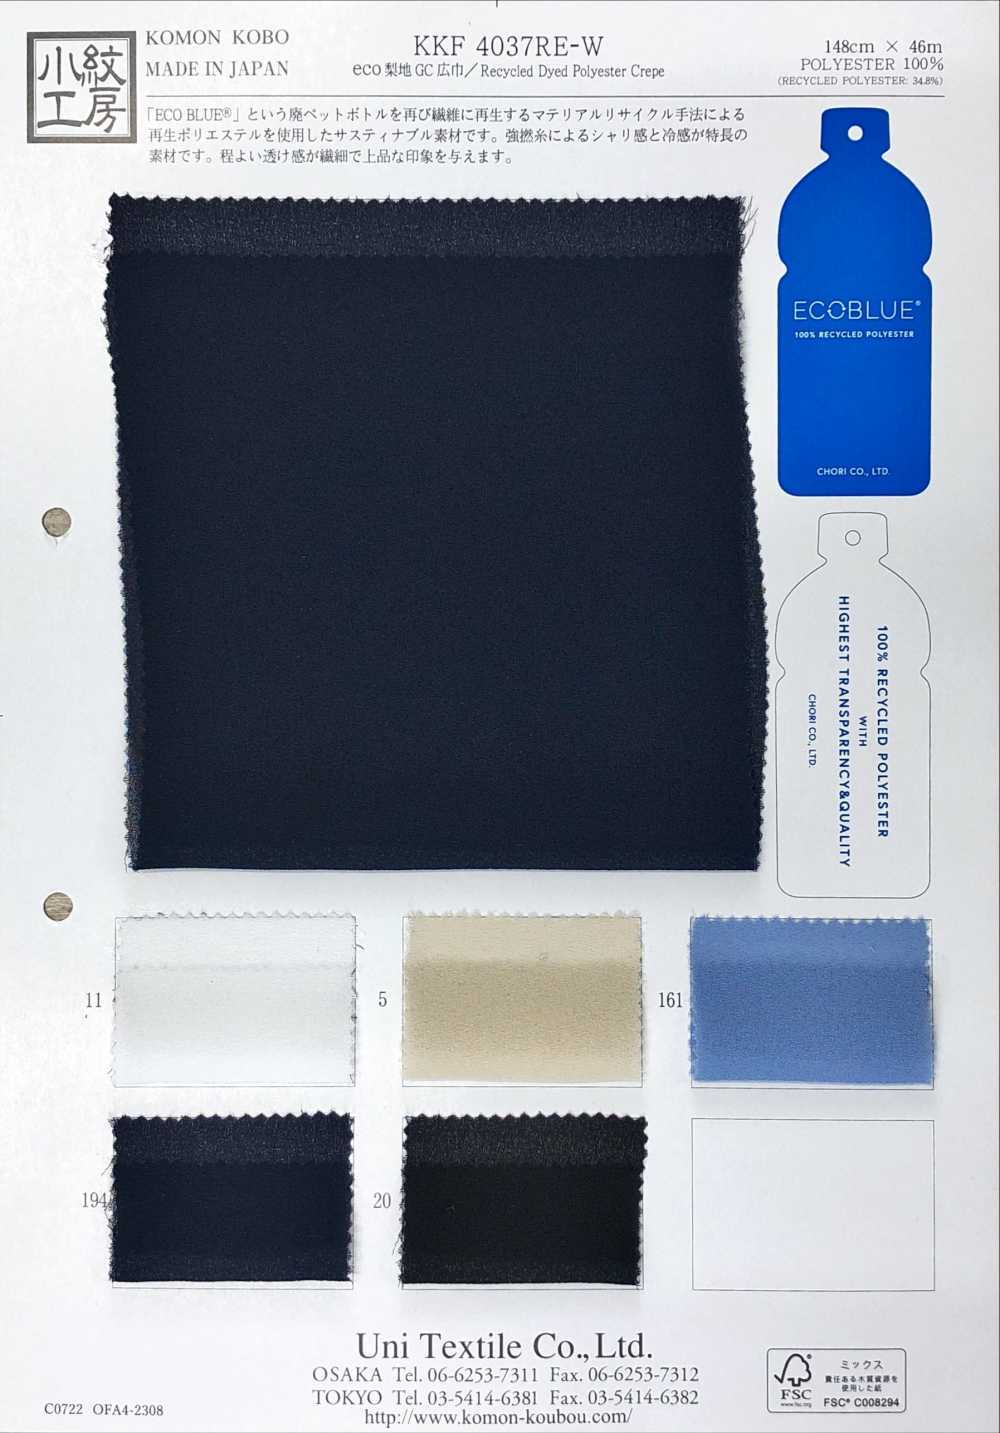 KKF4037RE-W Eco Sandwash Superficie GC Ancho Ancho[Fabrica Textil] Uni Textile